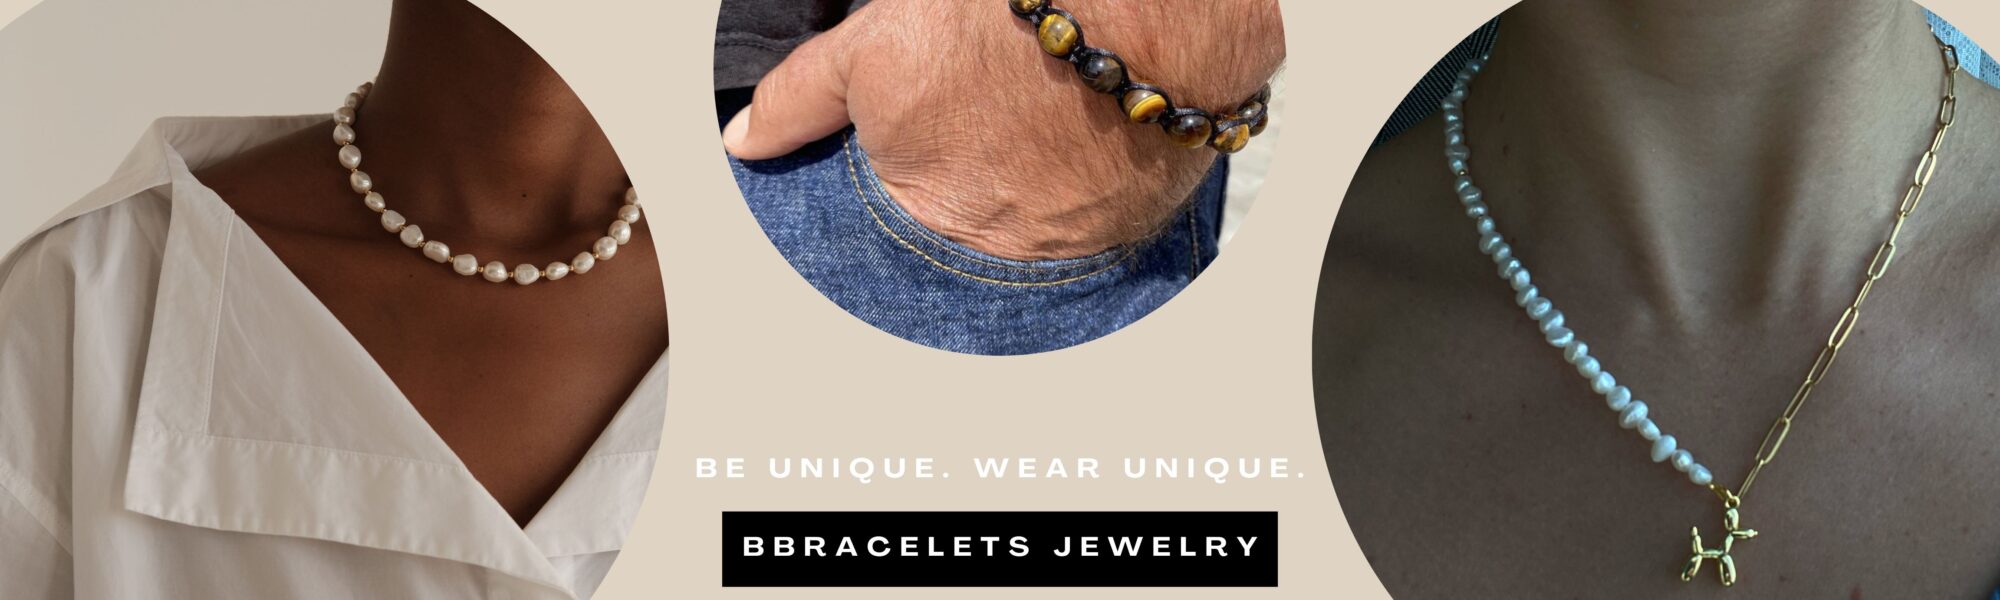 BBracelets Jewelry